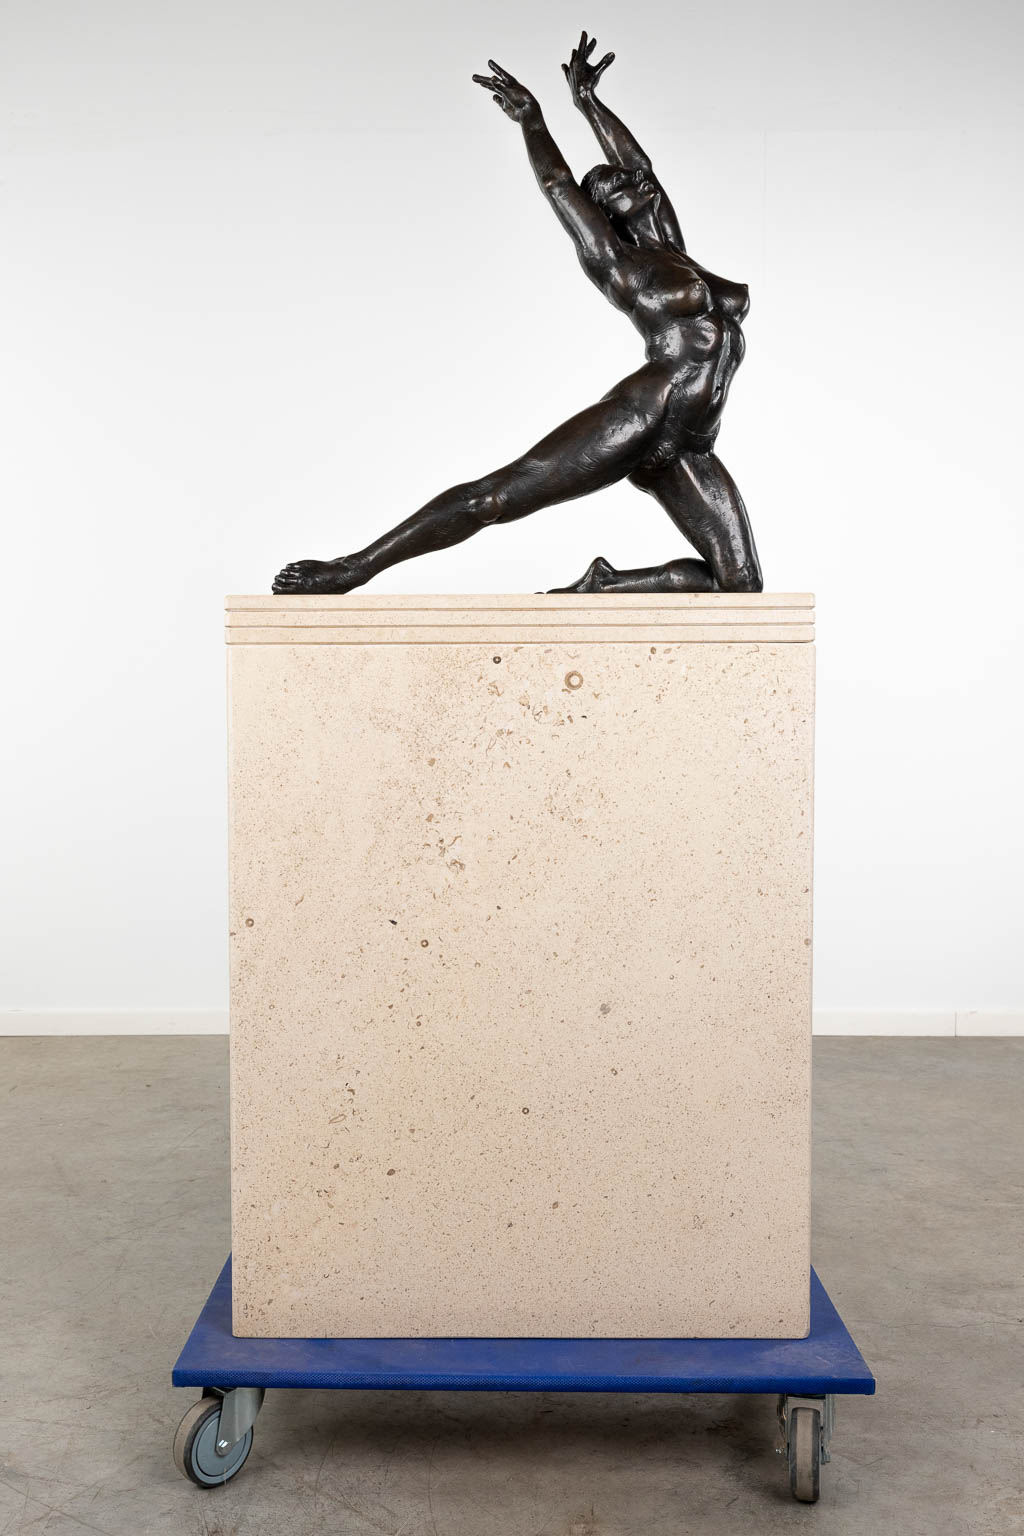 Irénée DURIEZ (1950) 'Femme' gepatineerd brons op een travertin sokkel. (D:20 x W:62 x H:73 cm)